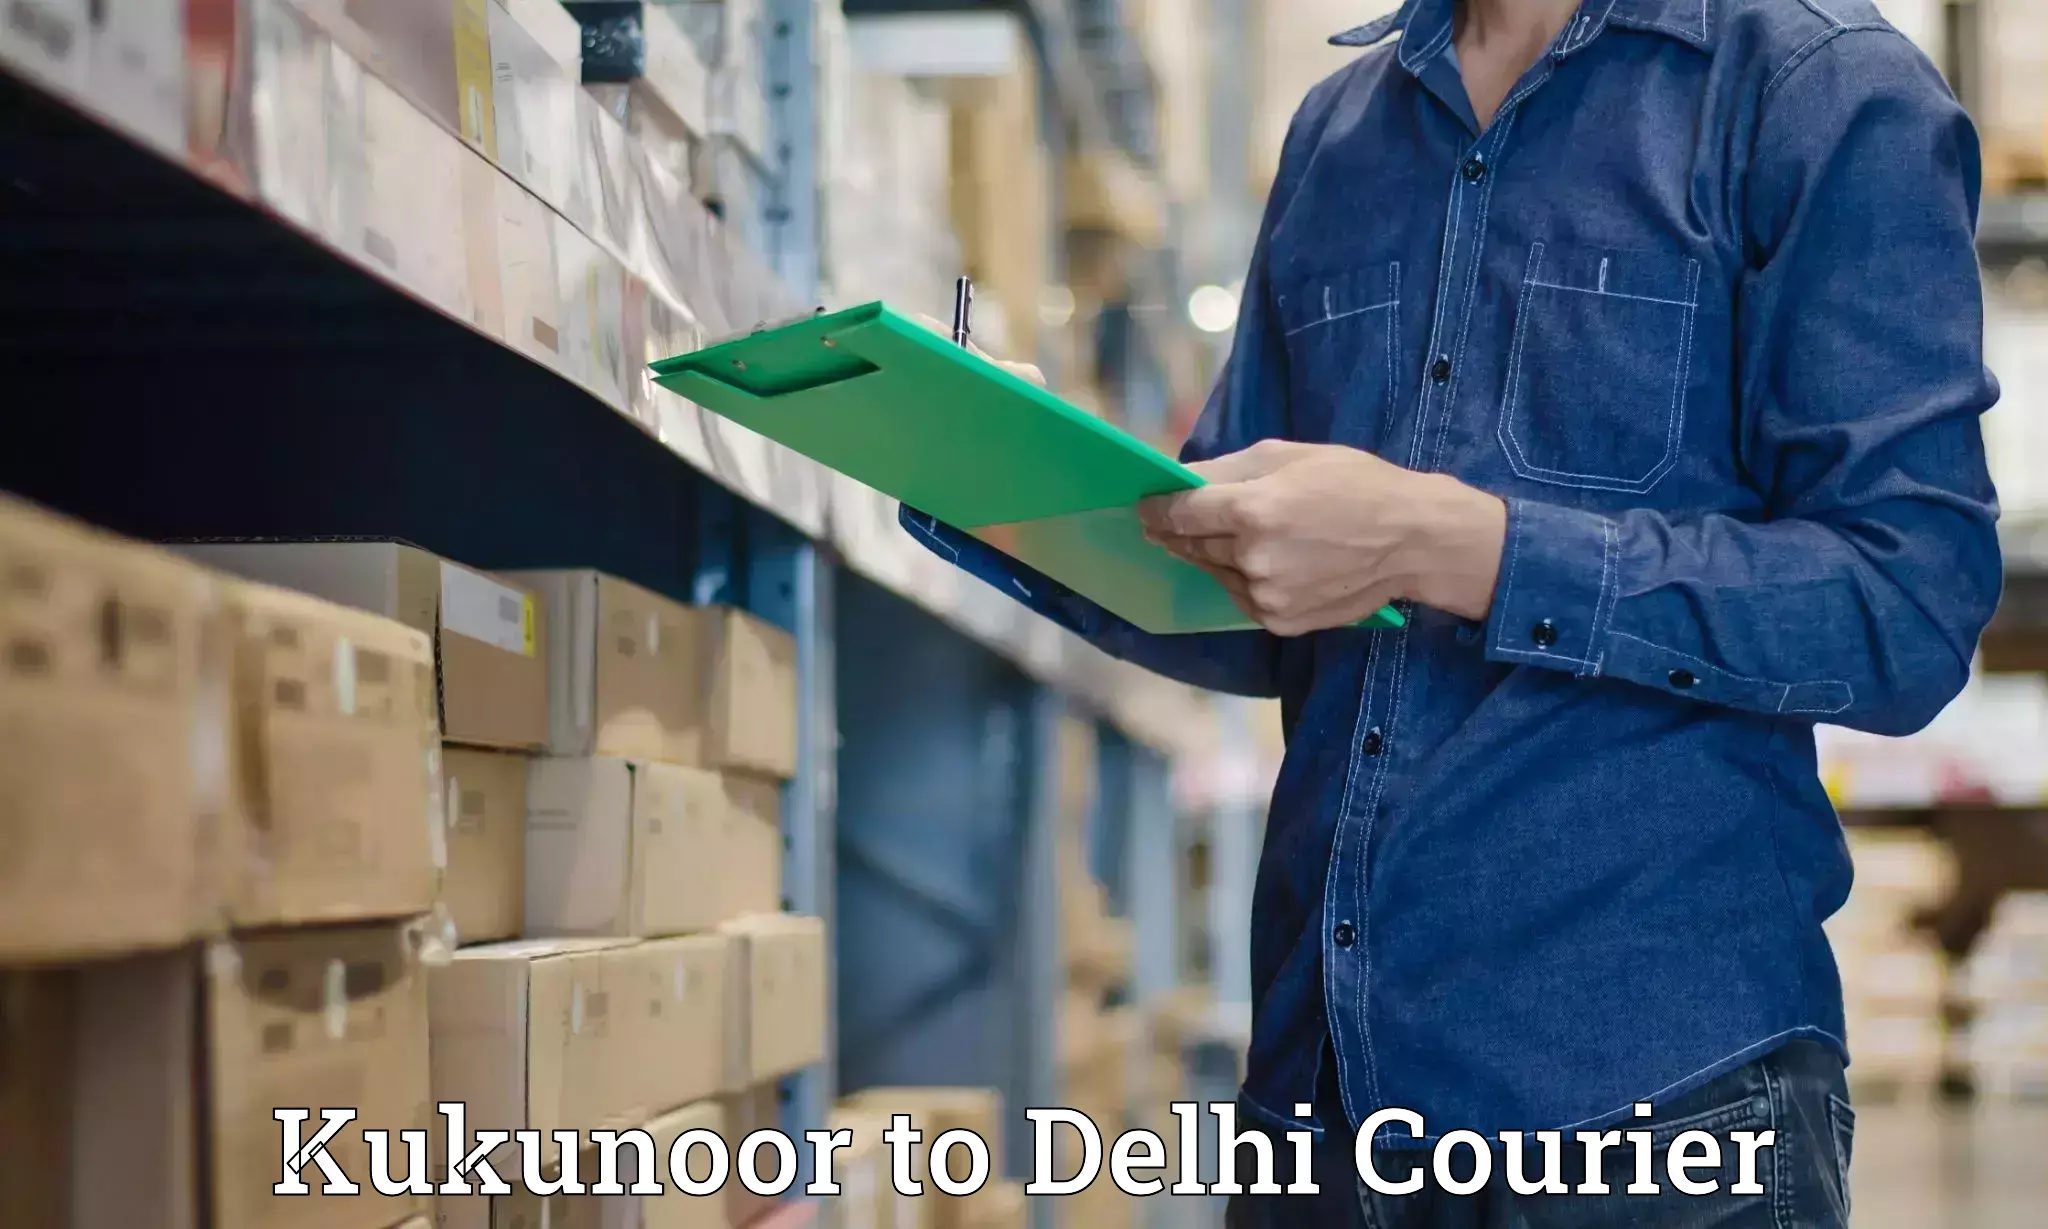 Logistics service provider Kukunoor to Delhi